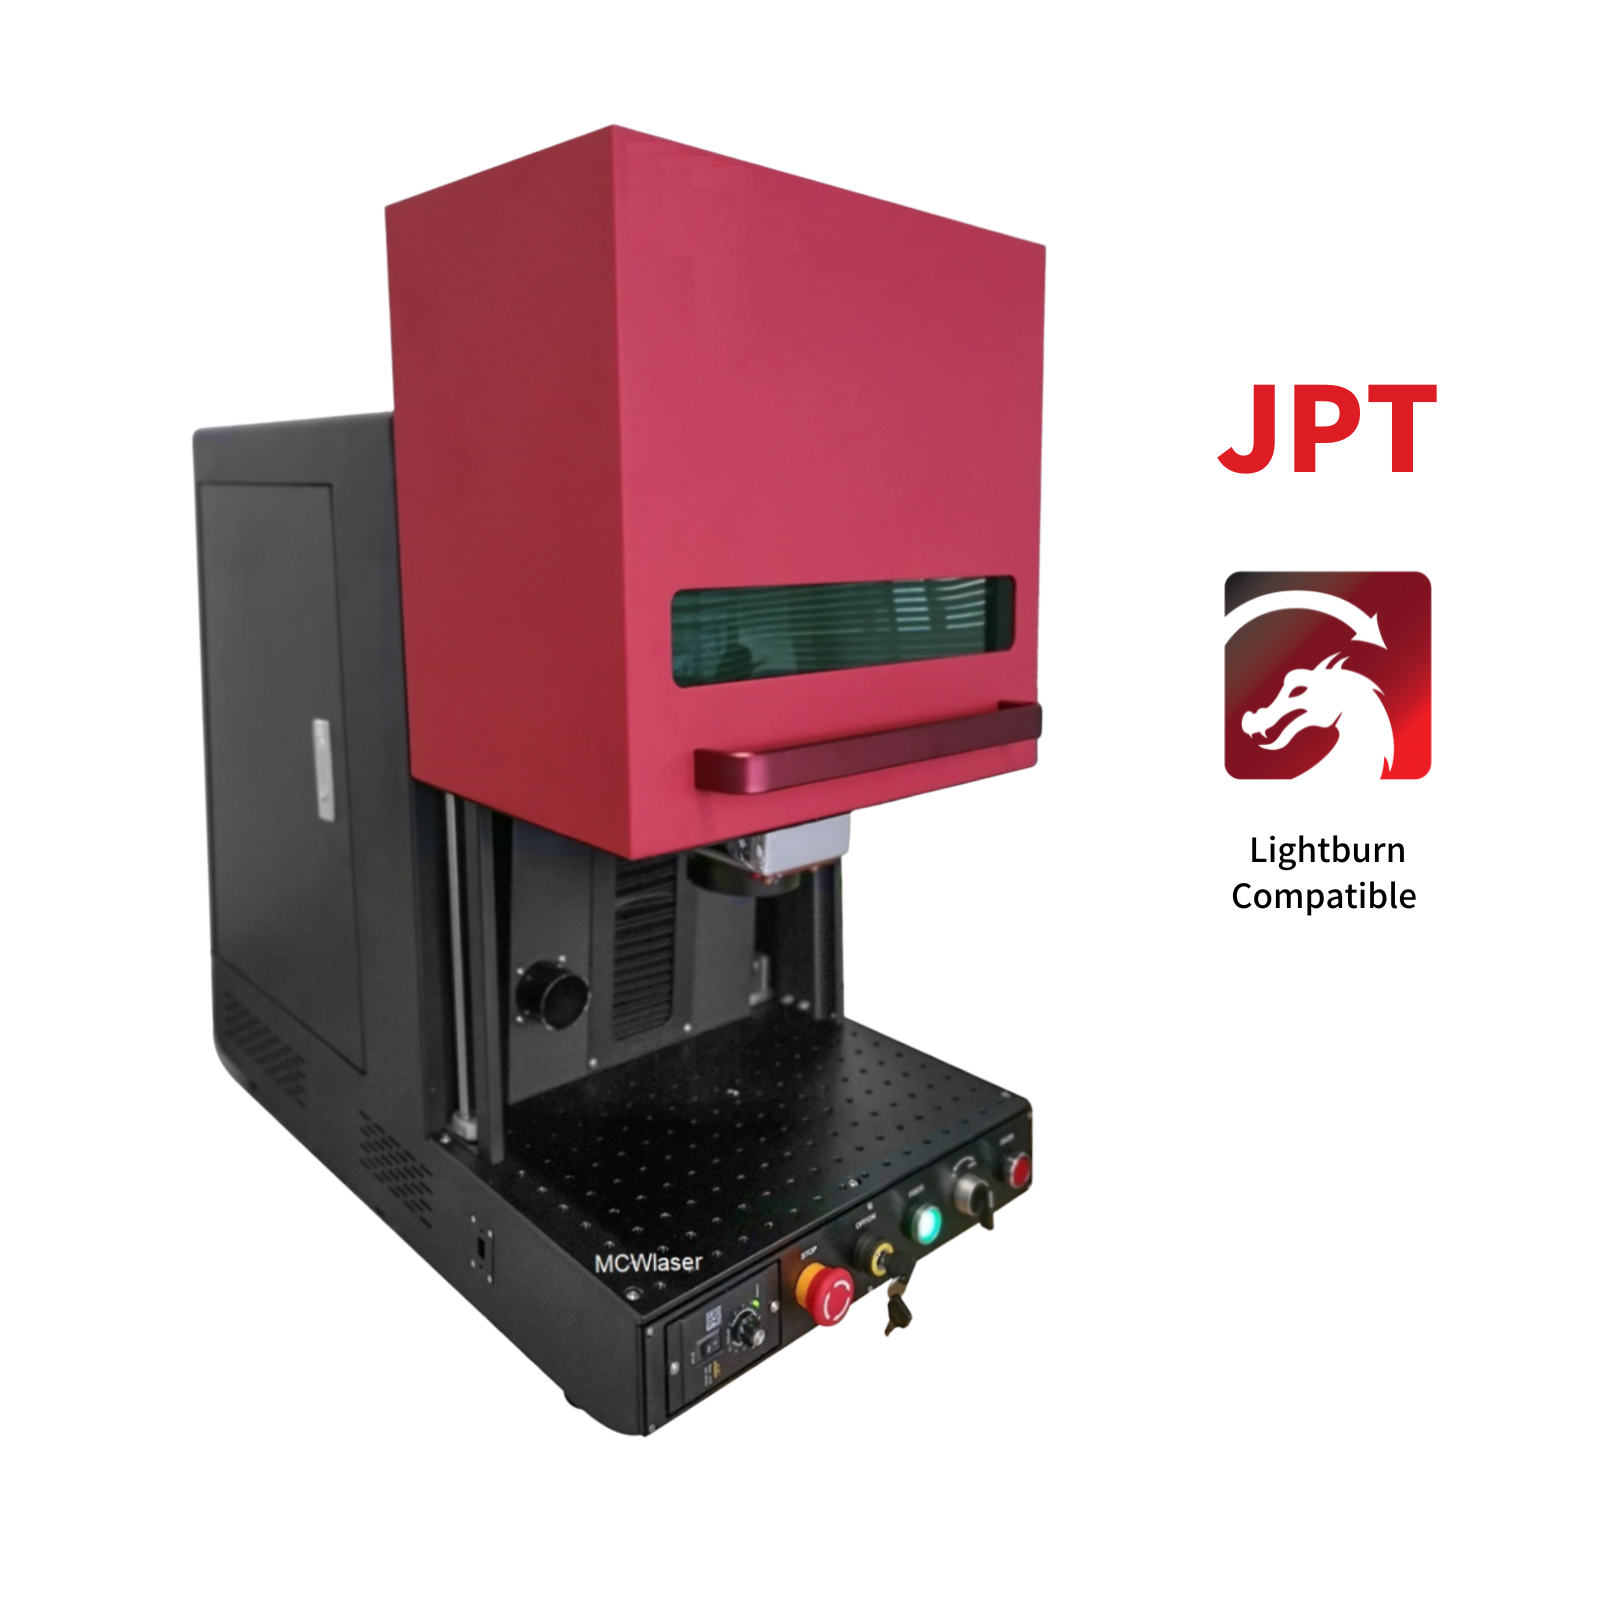 Machine de marquage de graveur laser à fibre de type B fermée MCWlaser 50 W JPT avec zone de travail de 5,9 "X 5,9" et rotatif D69 pour la gravure en profondeur du métal